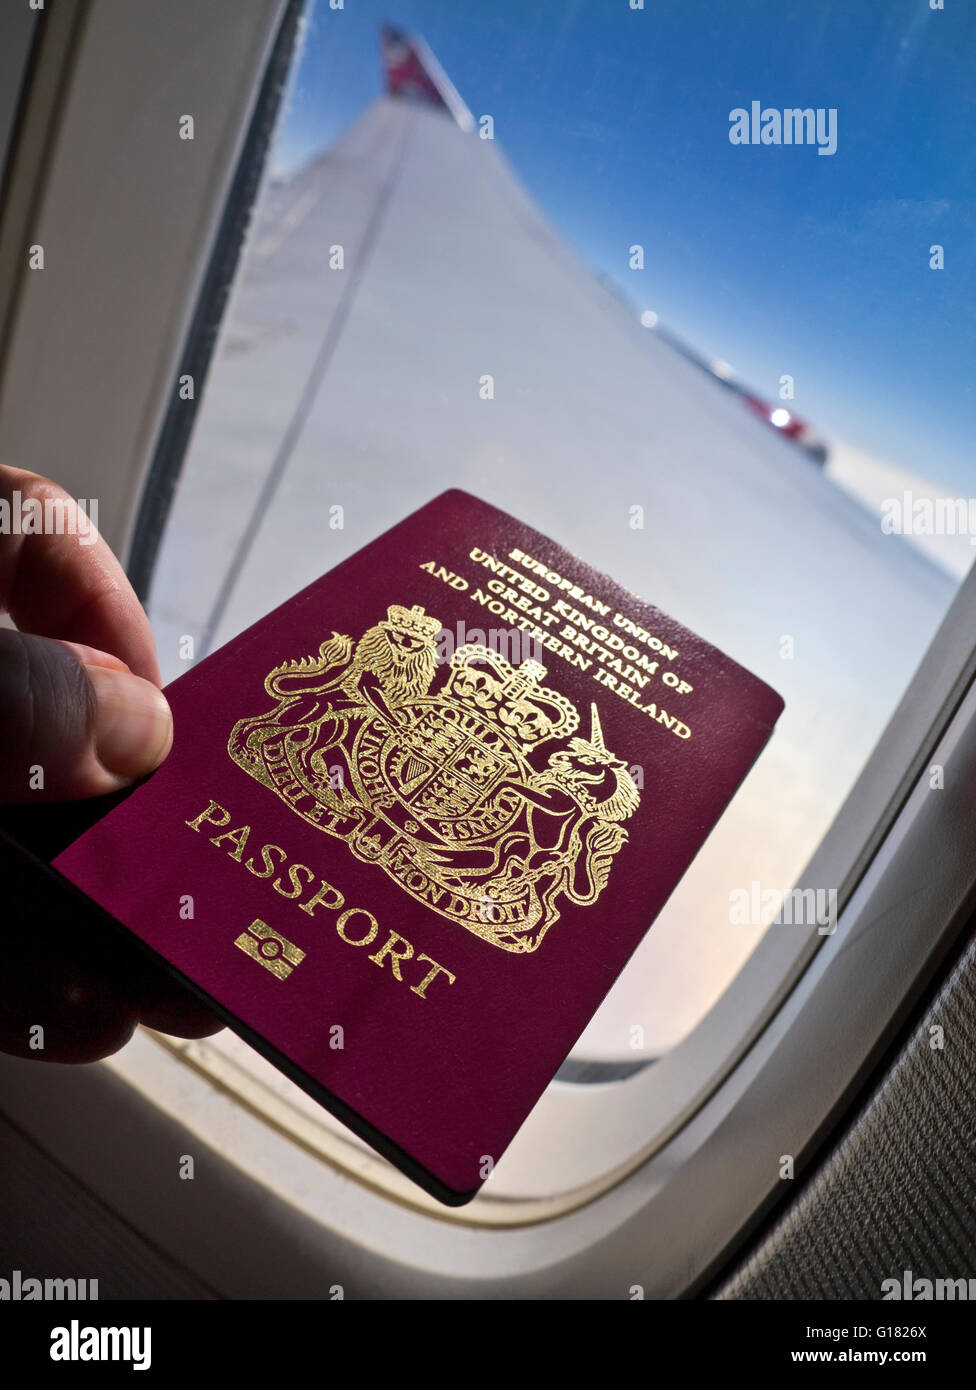 PASAPORTE VOLAR VACACIONES LIBERTAD concepto de viaje imagen biométrica británica pasaporte avión cabina con ventana ala y el cielo detrás en vuelo Foto de stock